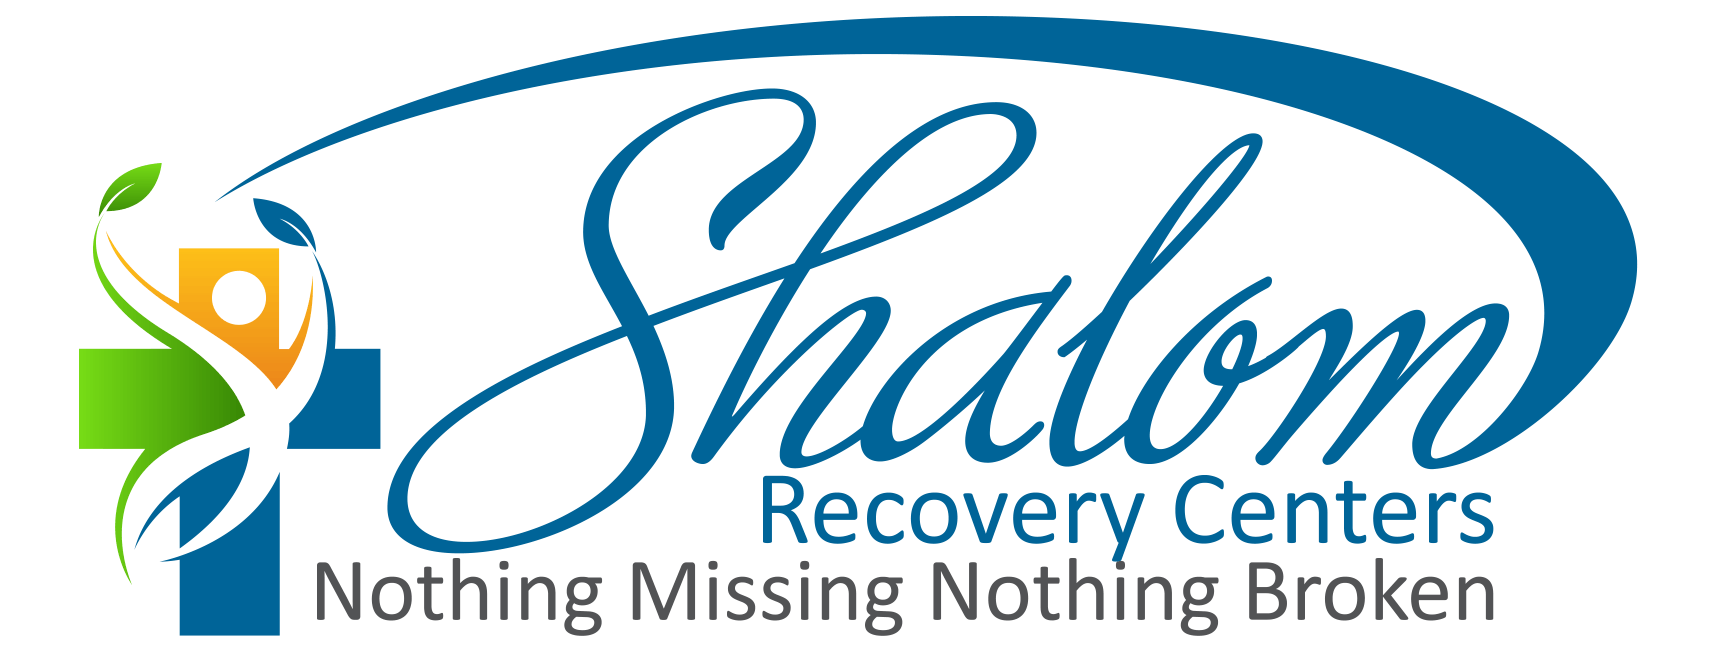 Shalom Logo - Shalom Recovery Centers